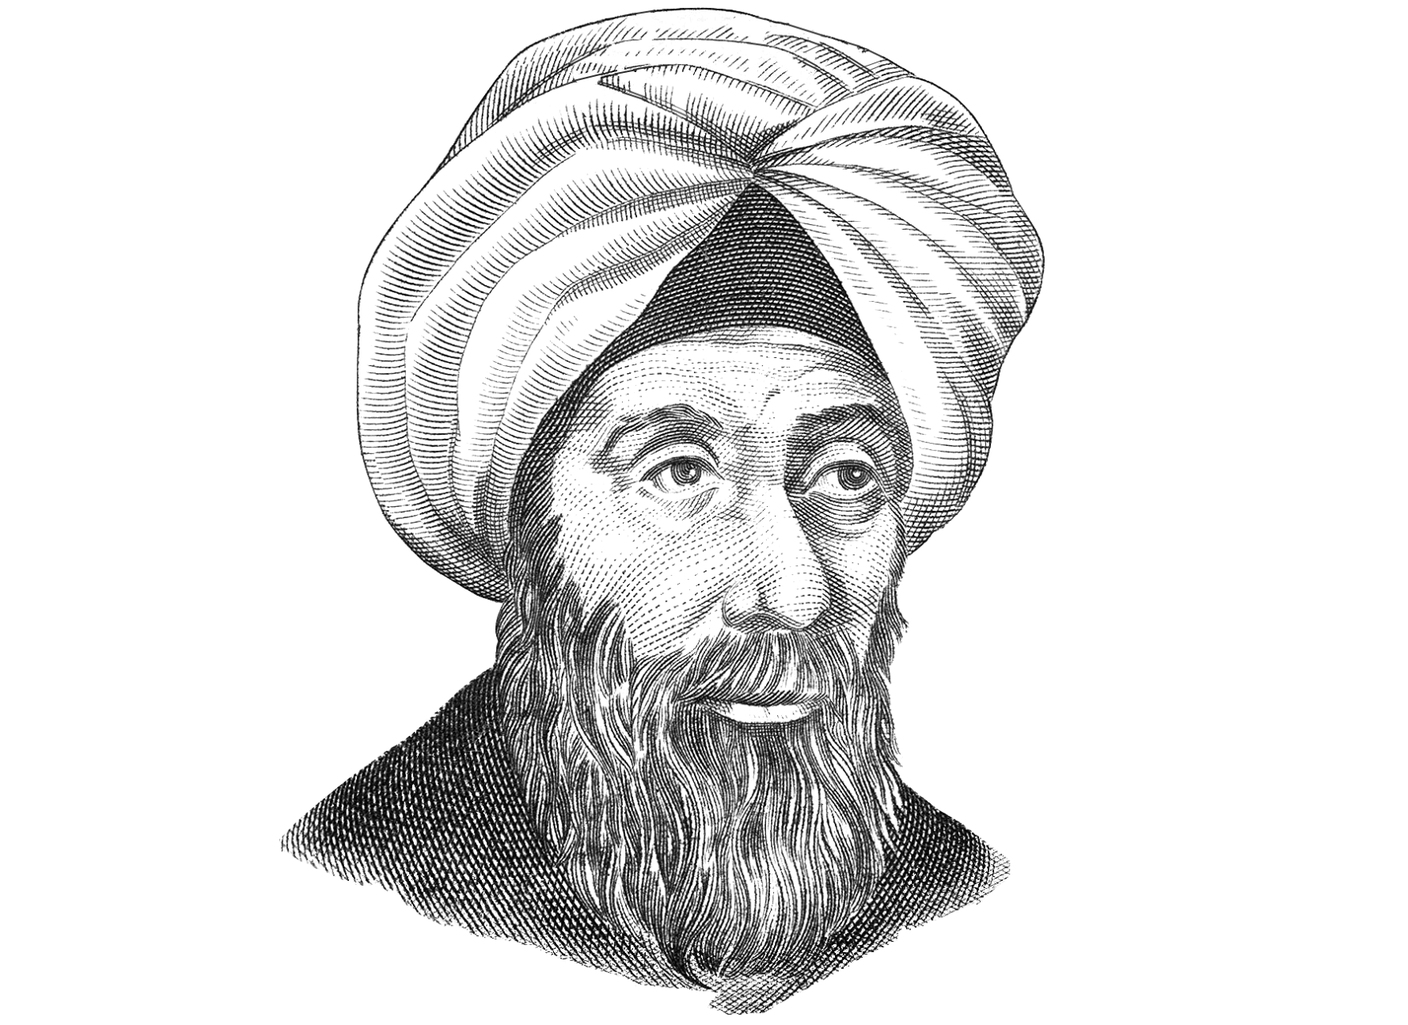 الصورة : 1040 وفاة ابن الهيثم، وهو عالم رياضيات وبصريات وفلكي وفيزيائي، ولد في البصرة.